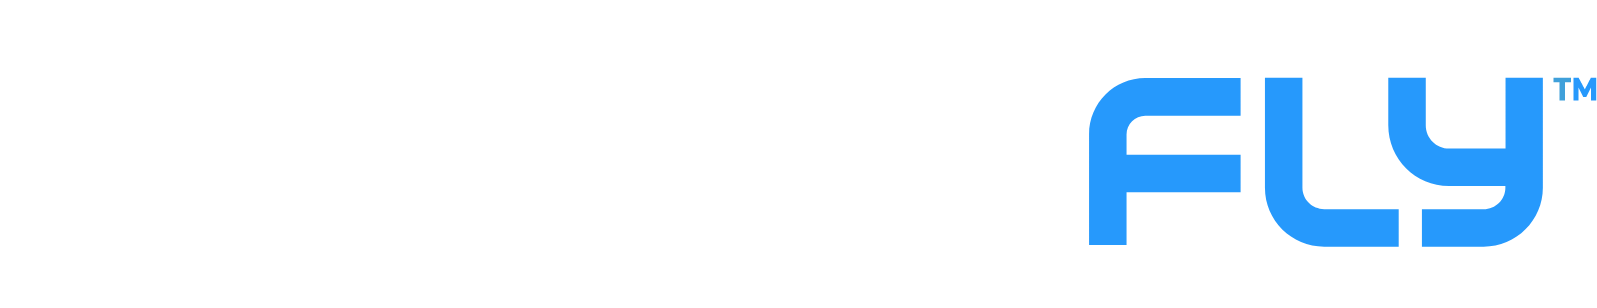 Draganfly logo large for dark backgrounds (transparent PNG)